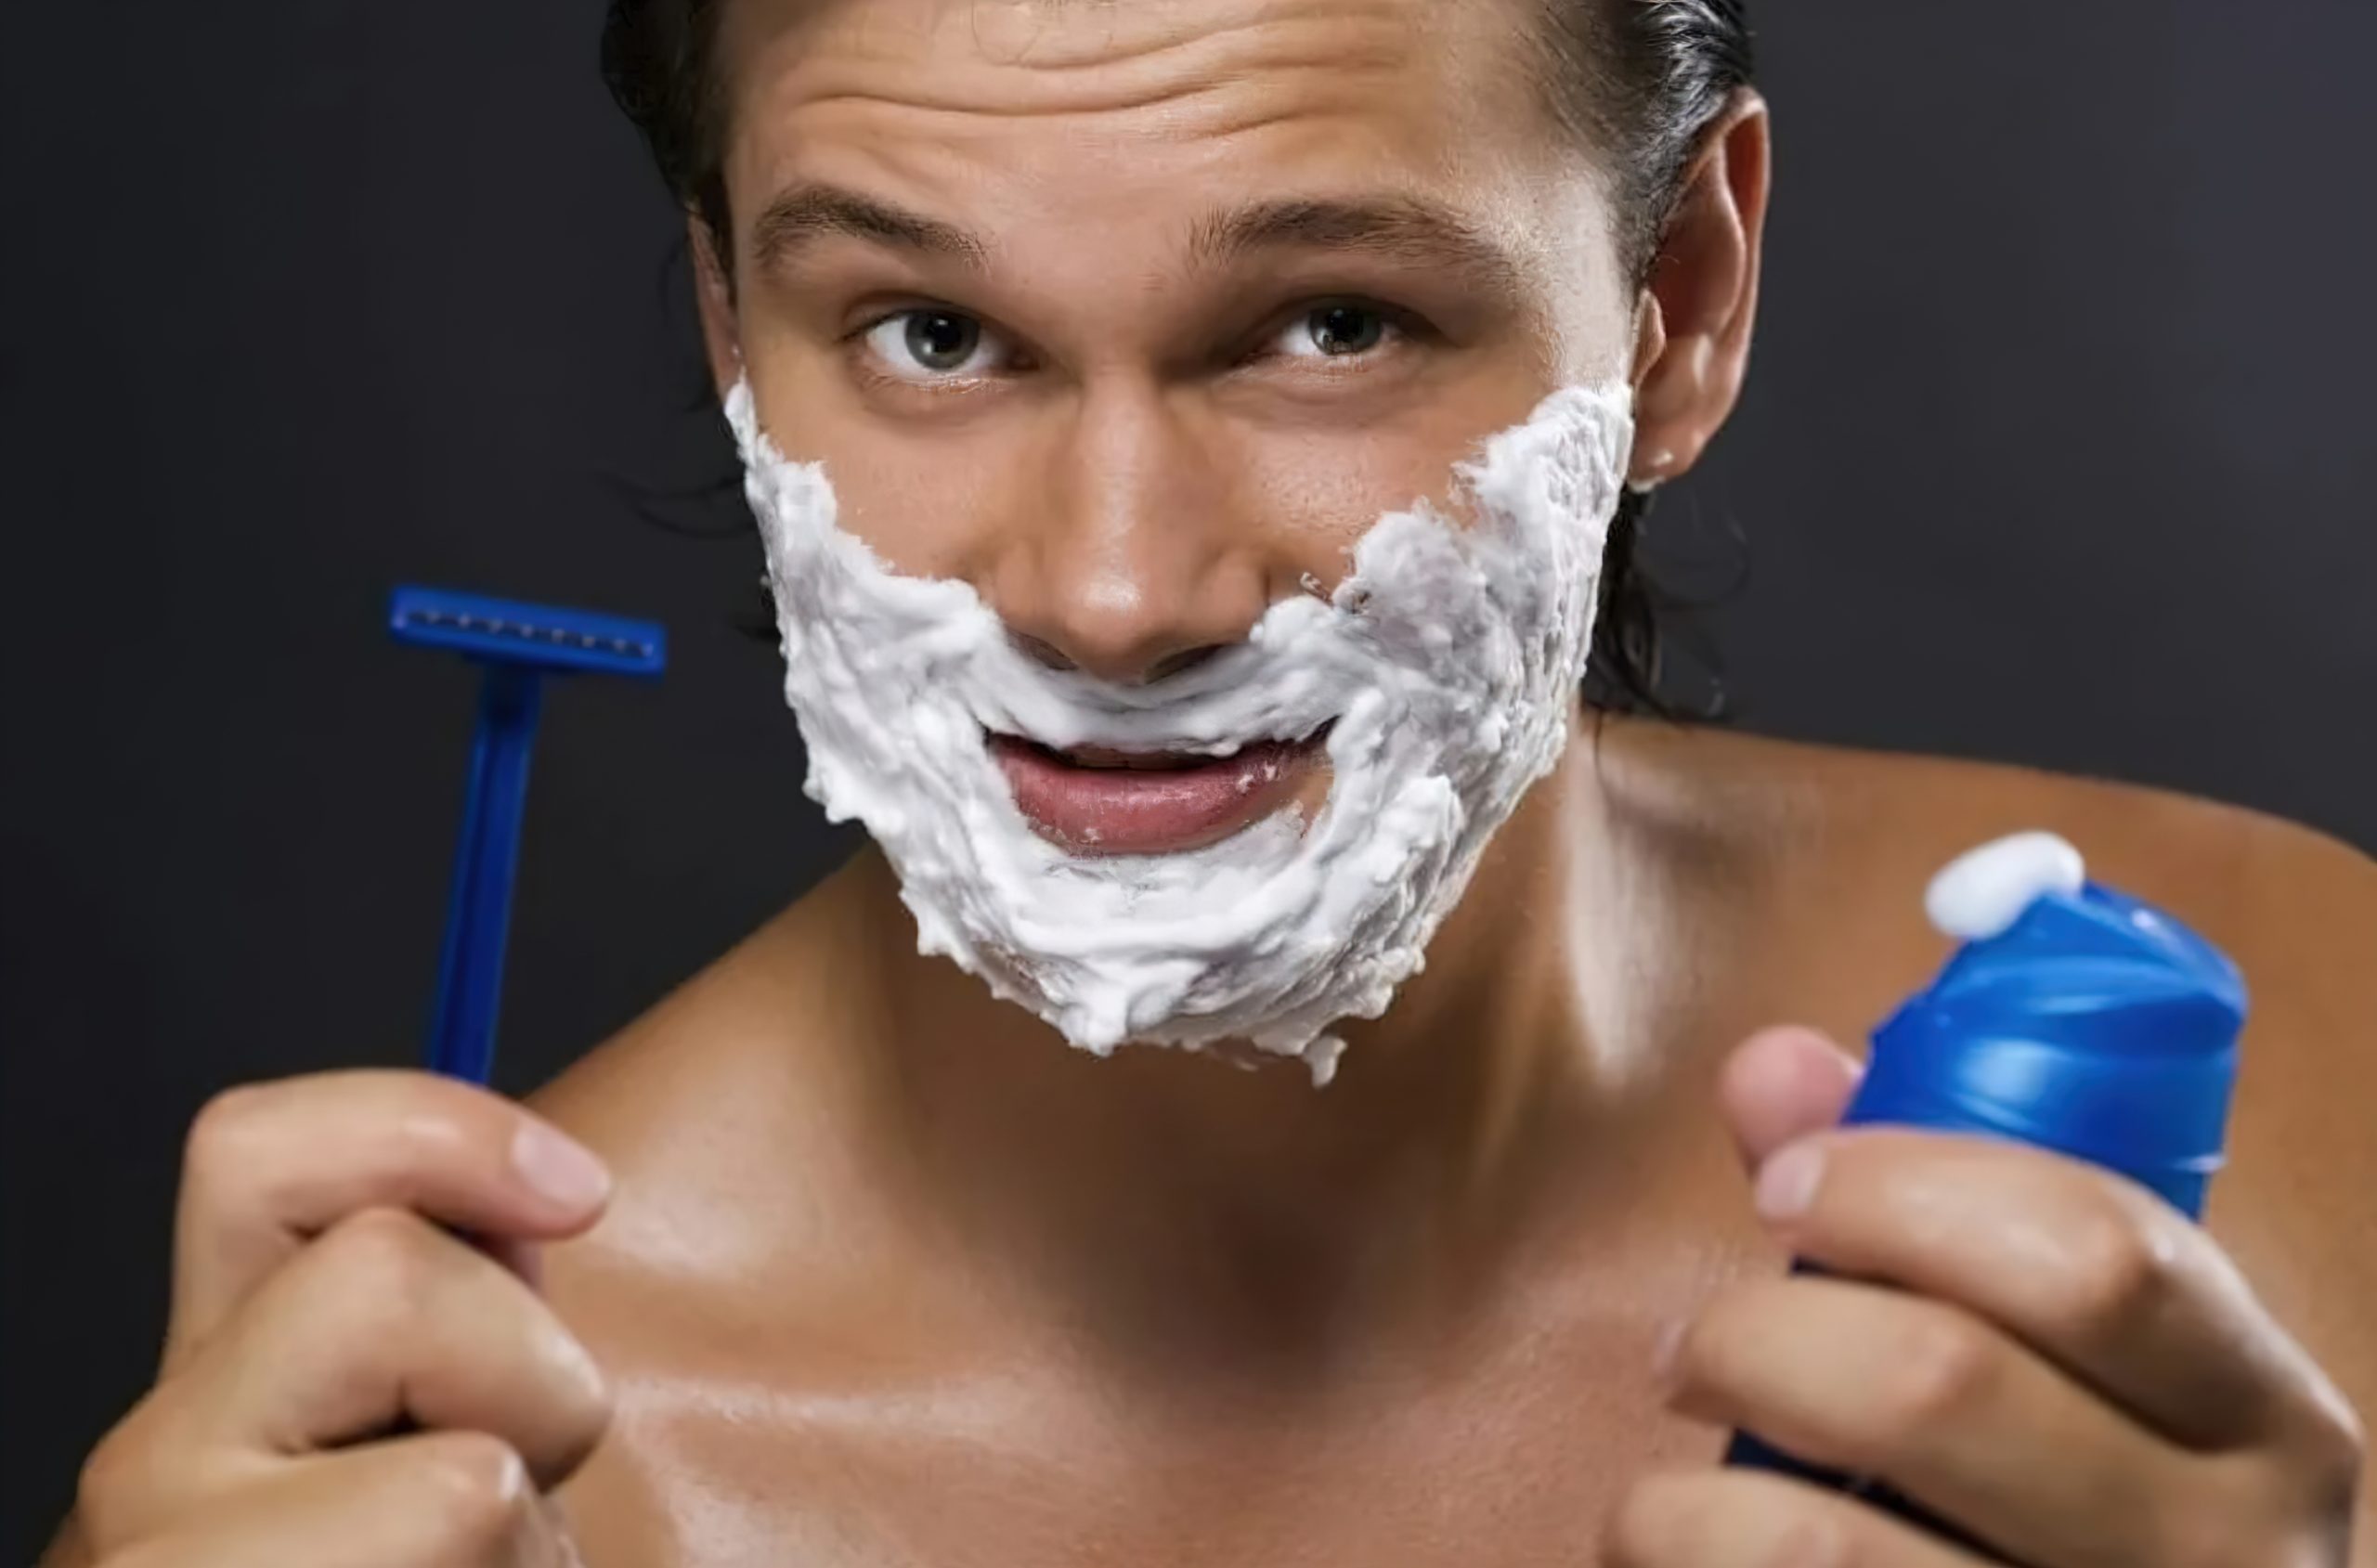 Бритье детская. Мужчина бреется. Пена для бритья для мужчин. Реклама пены для бритья. Пена для бритья на лице.